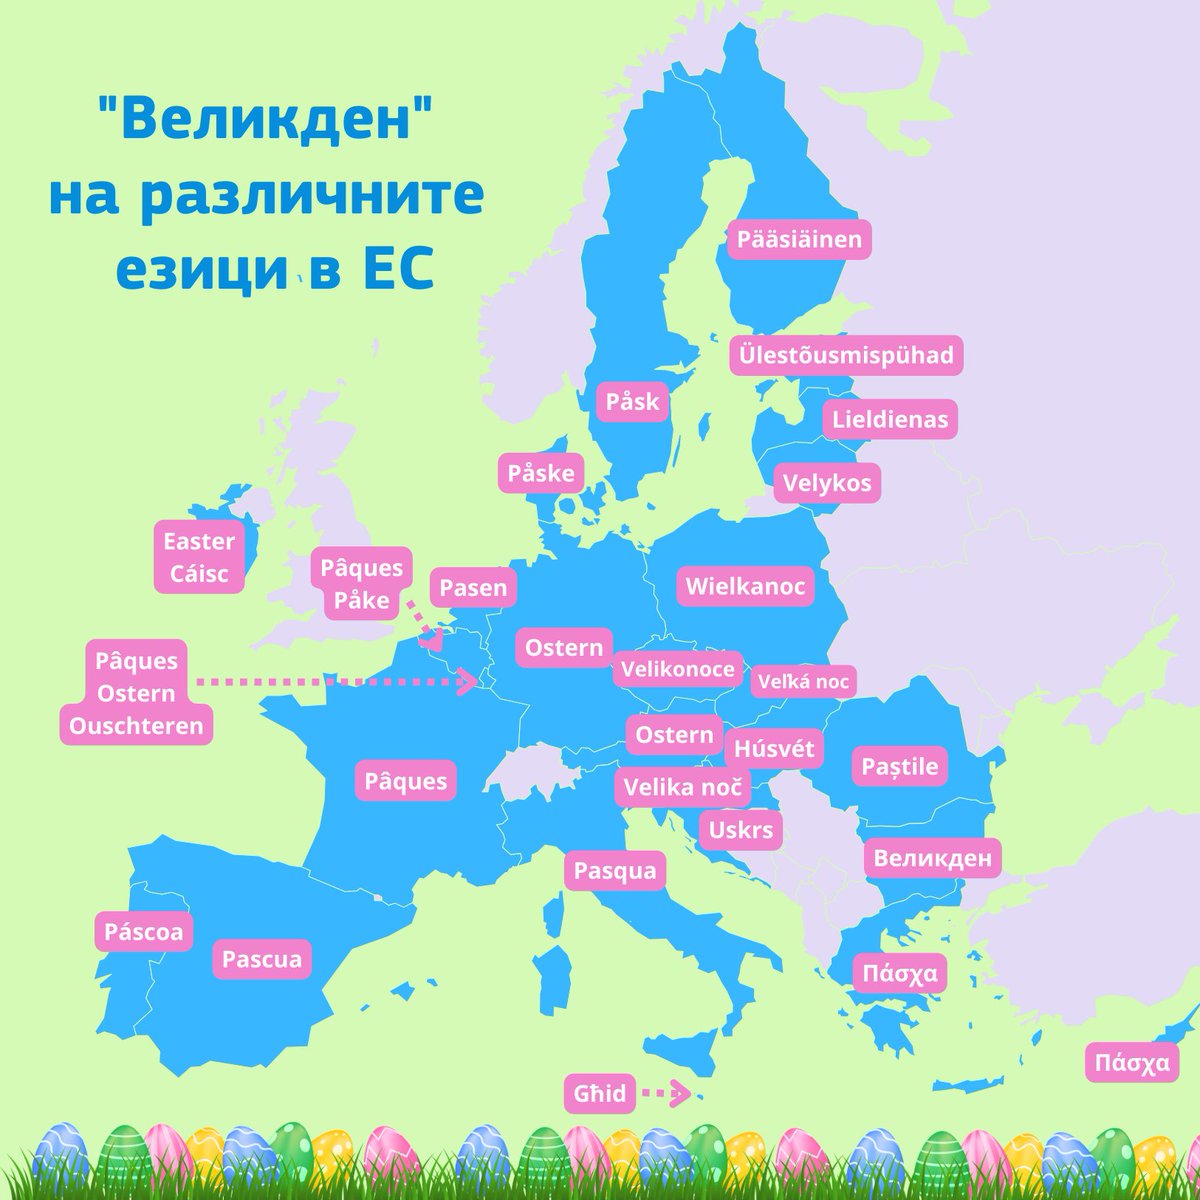 27 страни членки на ЕС 27 различни традиции, с които се посреща #Великден!🐰🌸🥚

В очакване на традиционната за България 🇧🇬 борба с боядисани яйца утре, споделяме с вас някои от най-интересните обичаи, с които страните в Европа отбелязват този светъл празник. 🧵👇